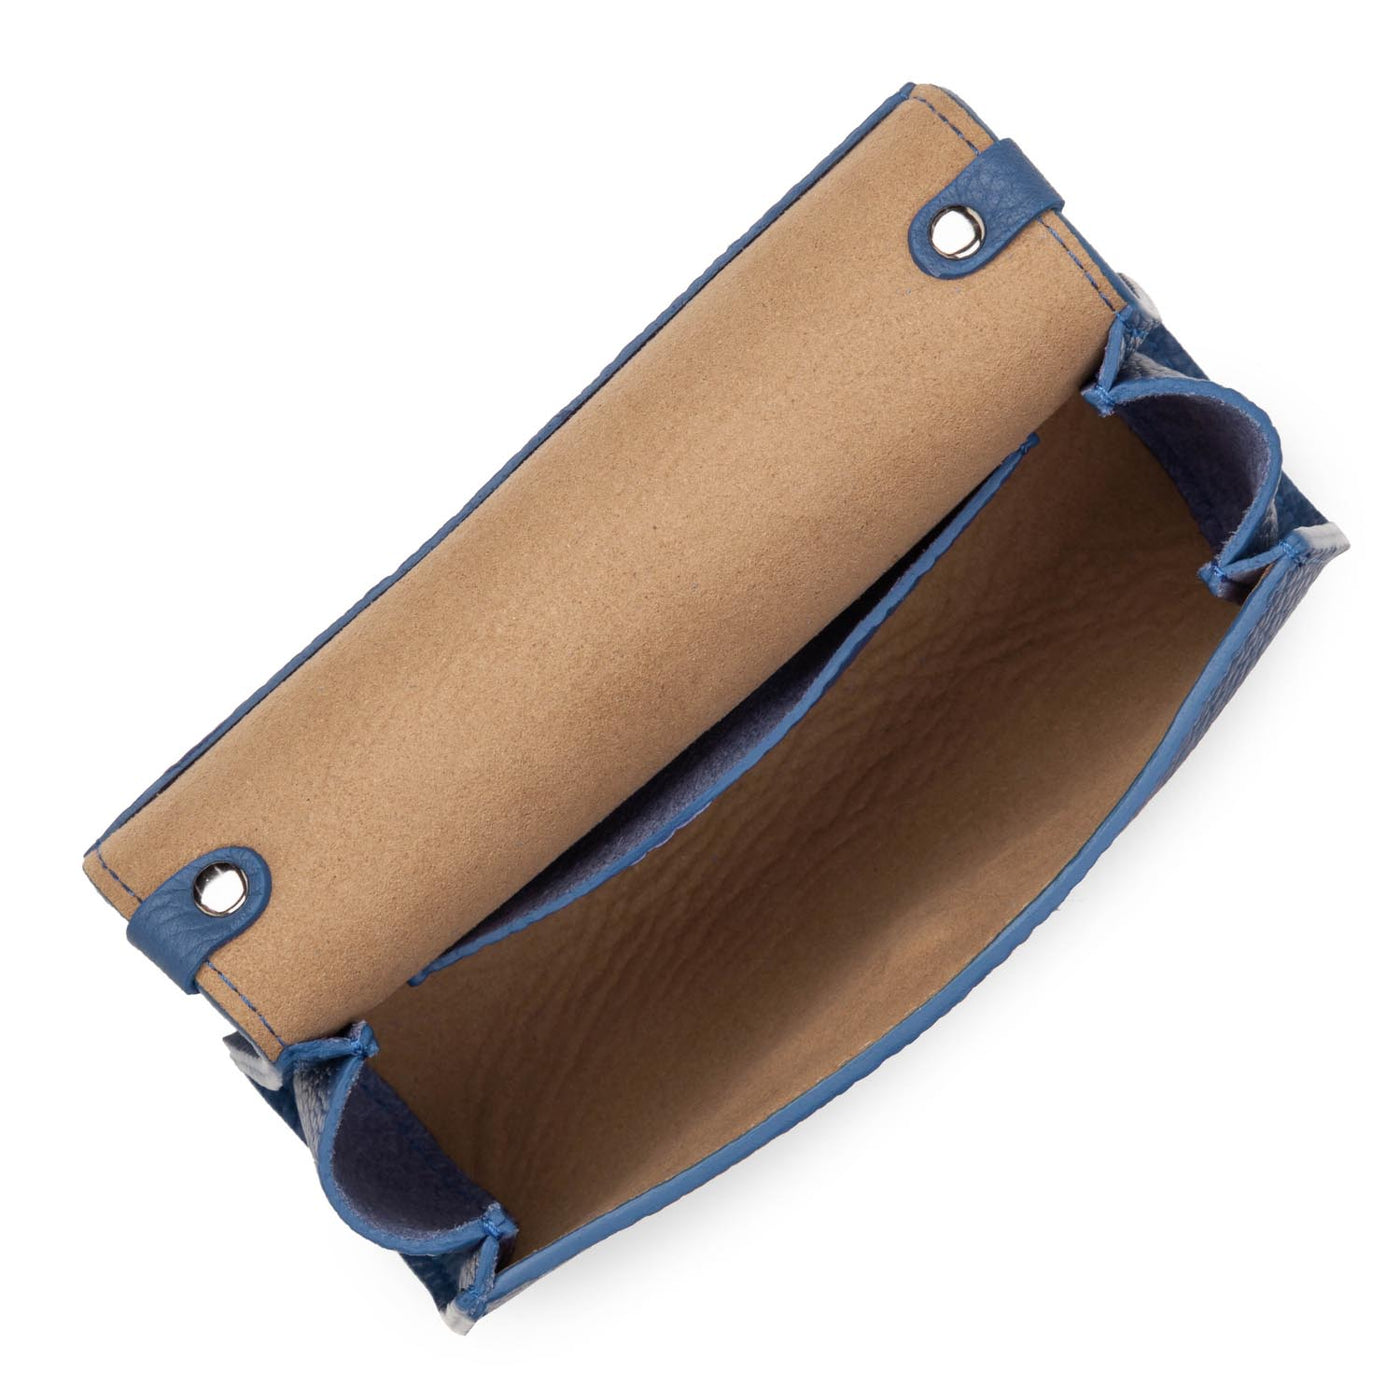 mini handbag - studio mimi #couleur_bleu-jeans